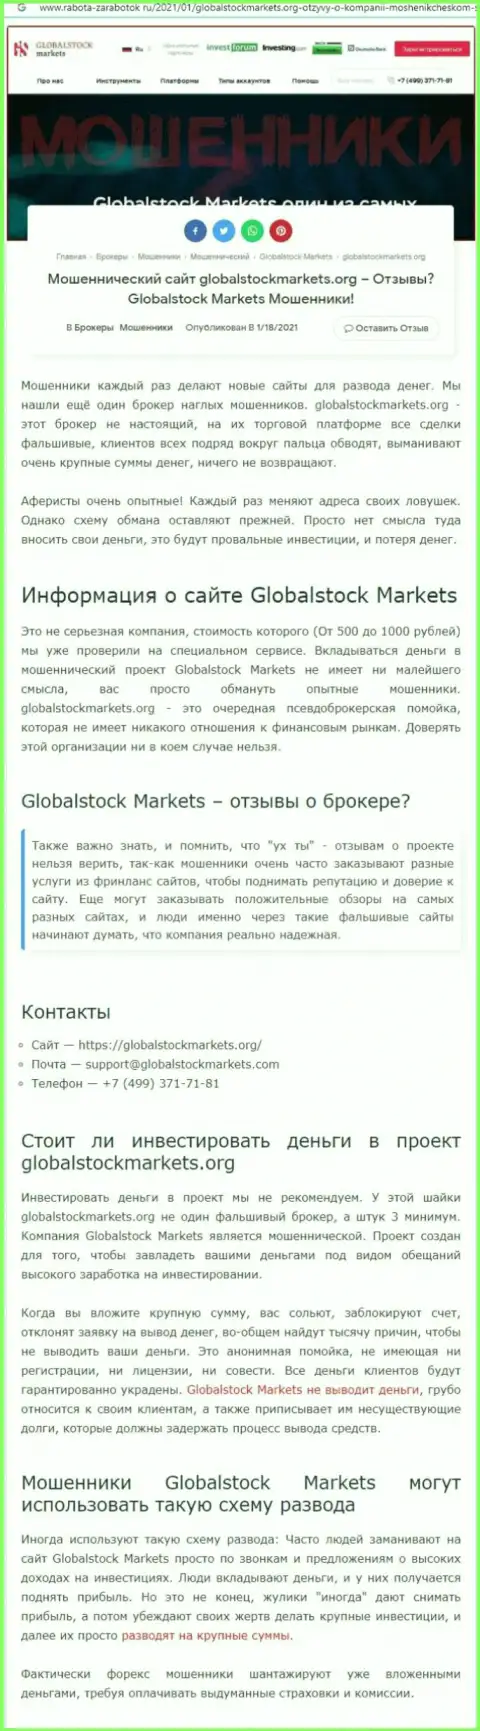 Global Stock Markets - это ОБМАН НА ДЕНЬГИ ! БУДЬТЕ БДИТЕЛЬНЫ (статья с разбором